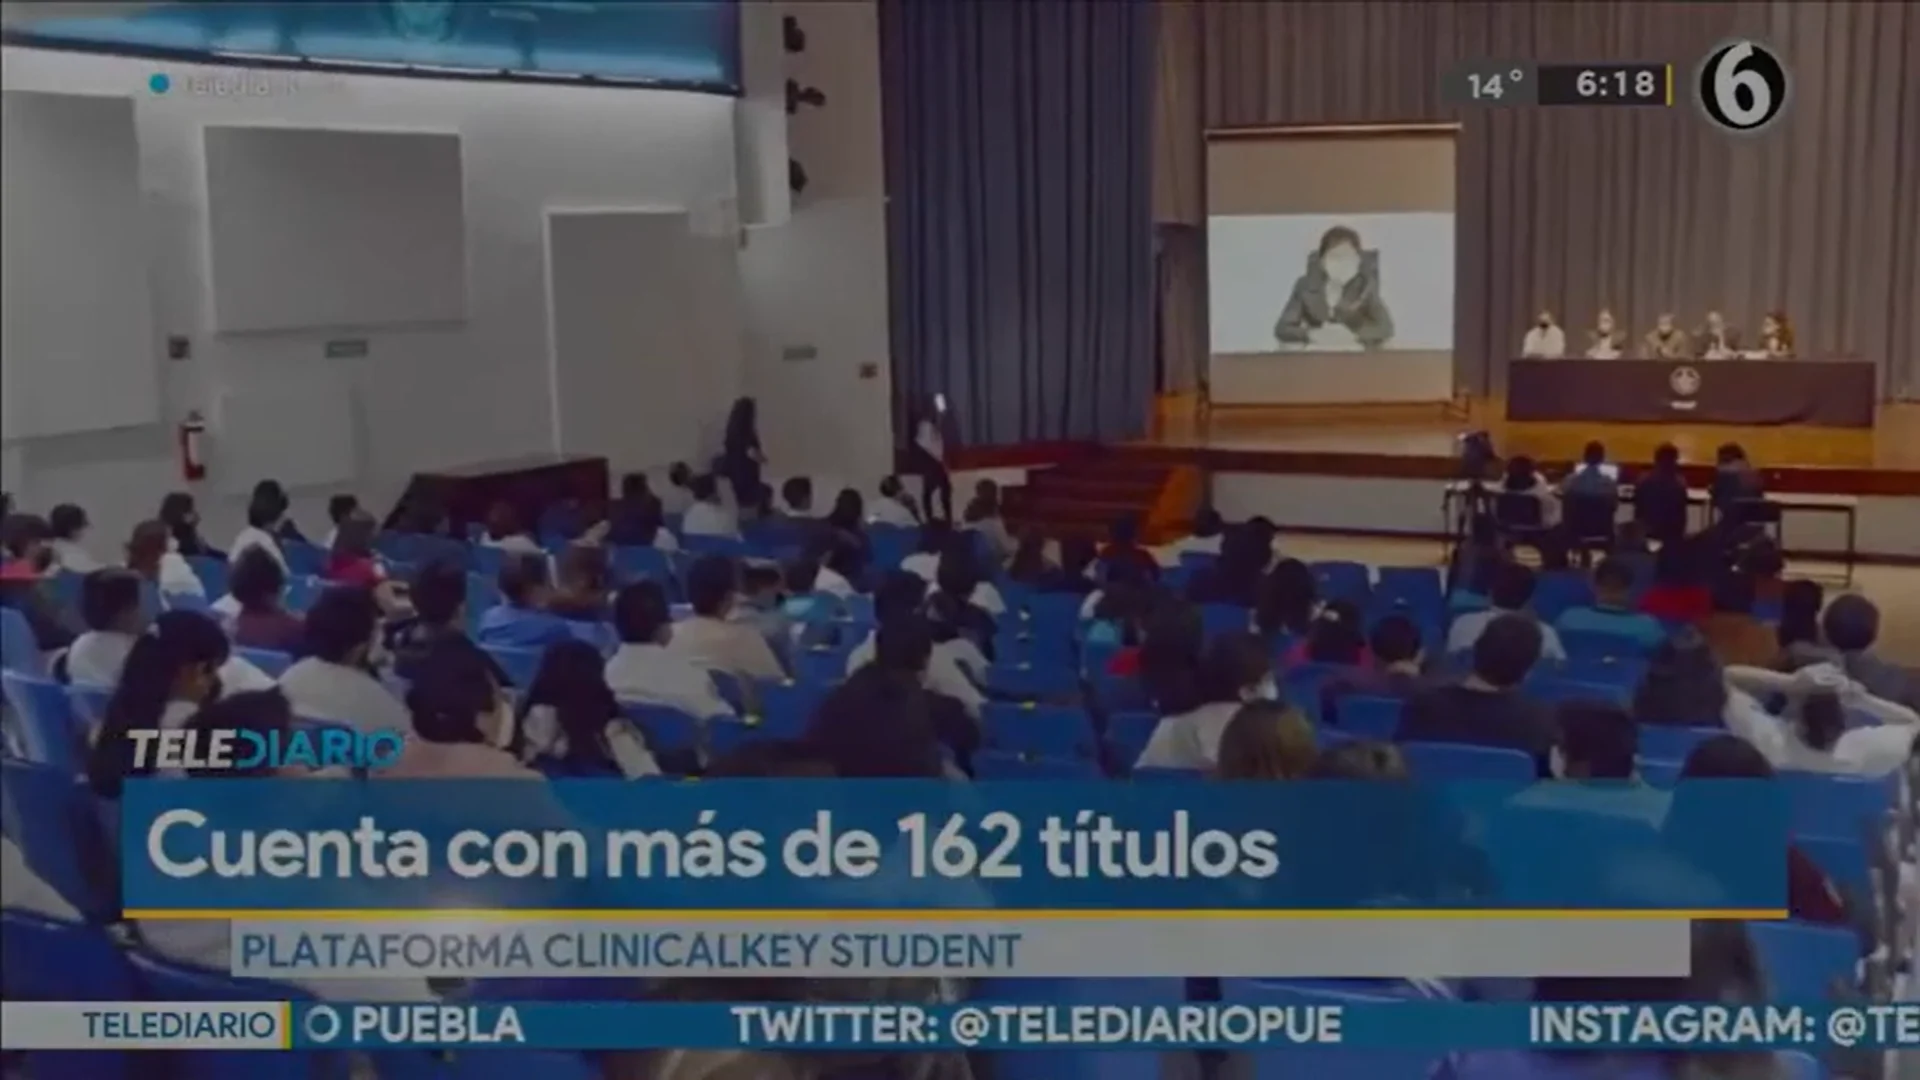 Telediario México cubre el evento presentación de ClinicalKey Student en la BUAP